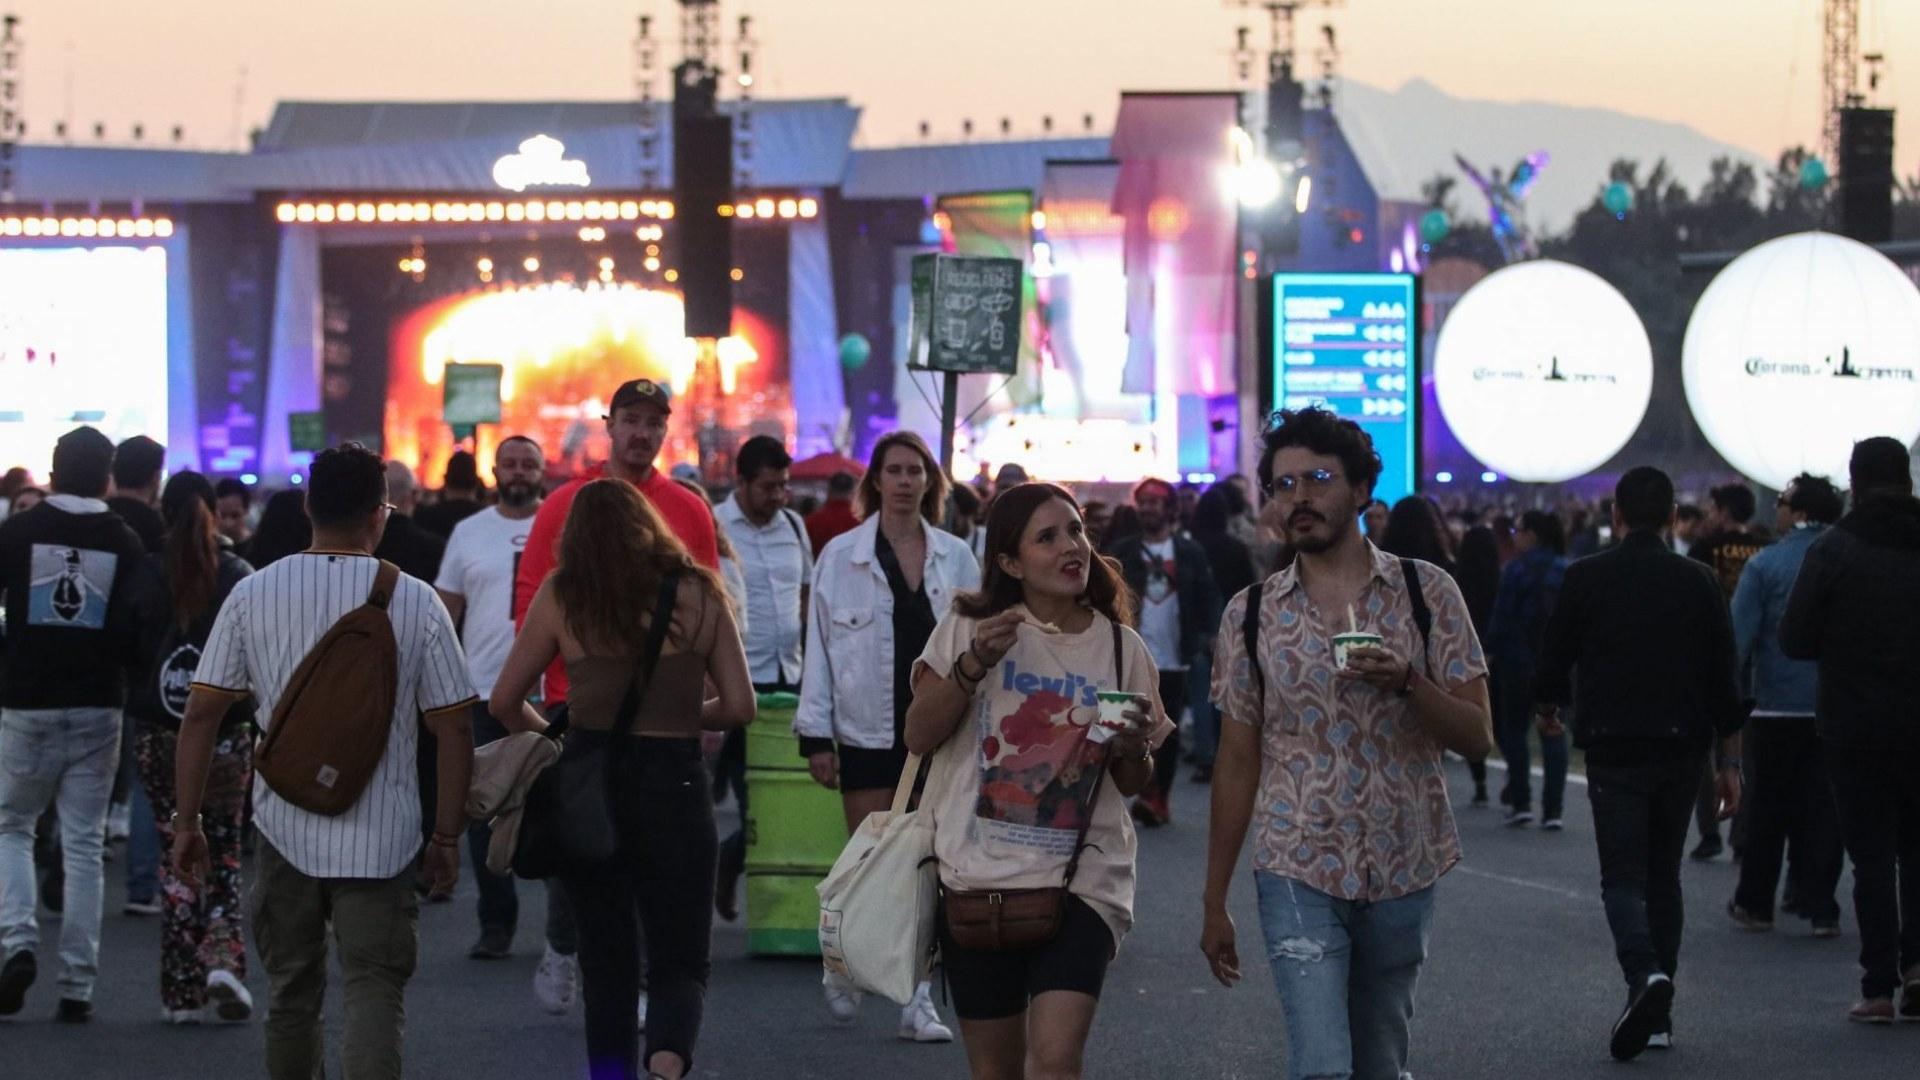 Celulares y Conciertos: Así Influye la Tecnología en Público de Festivales de Música en México